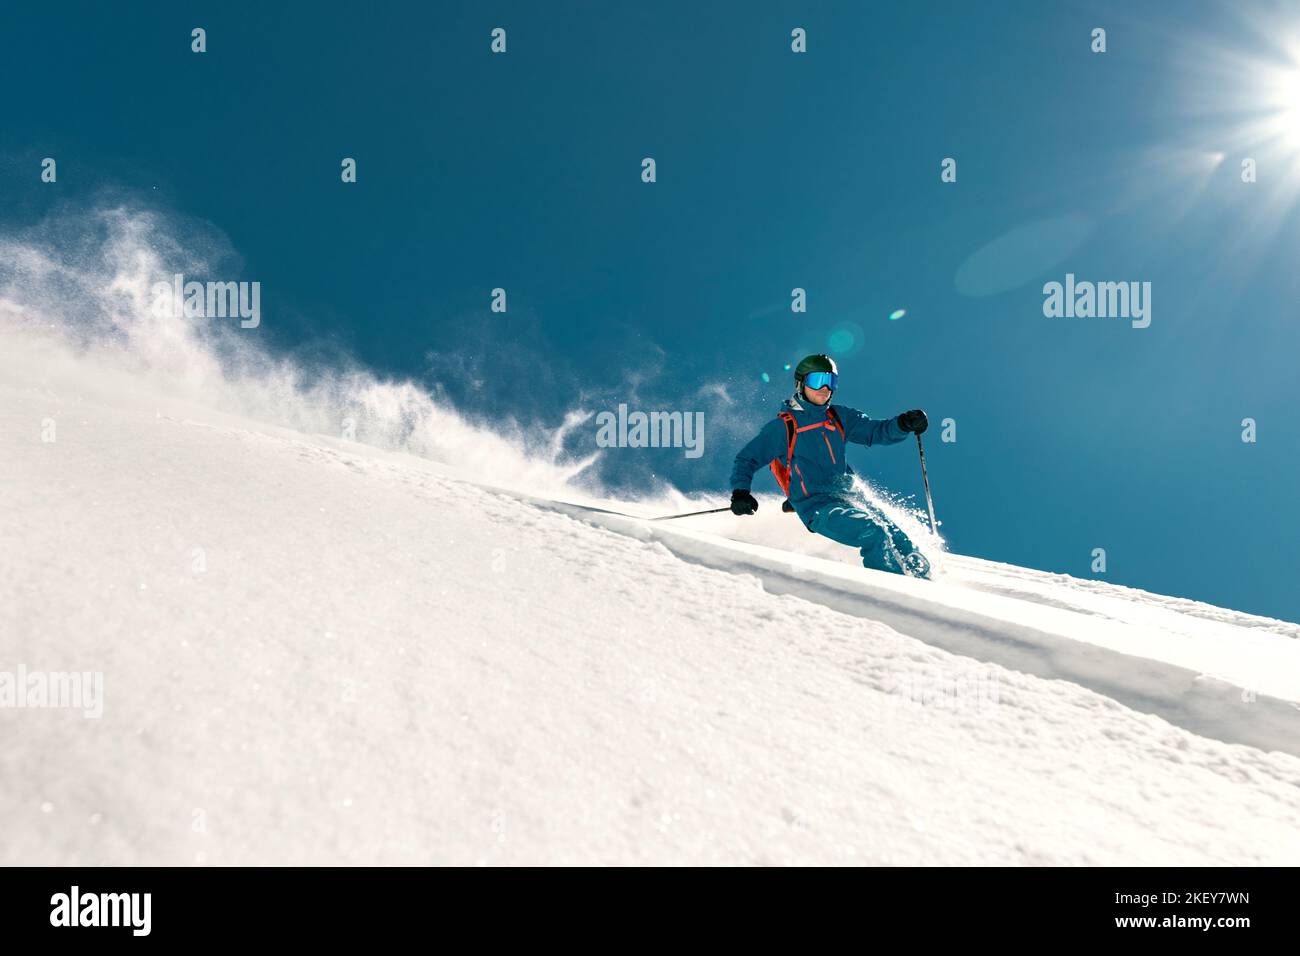 Molto veloce sciatore cavalca sulle piste da sci. Concetto di freeride Foto Stock